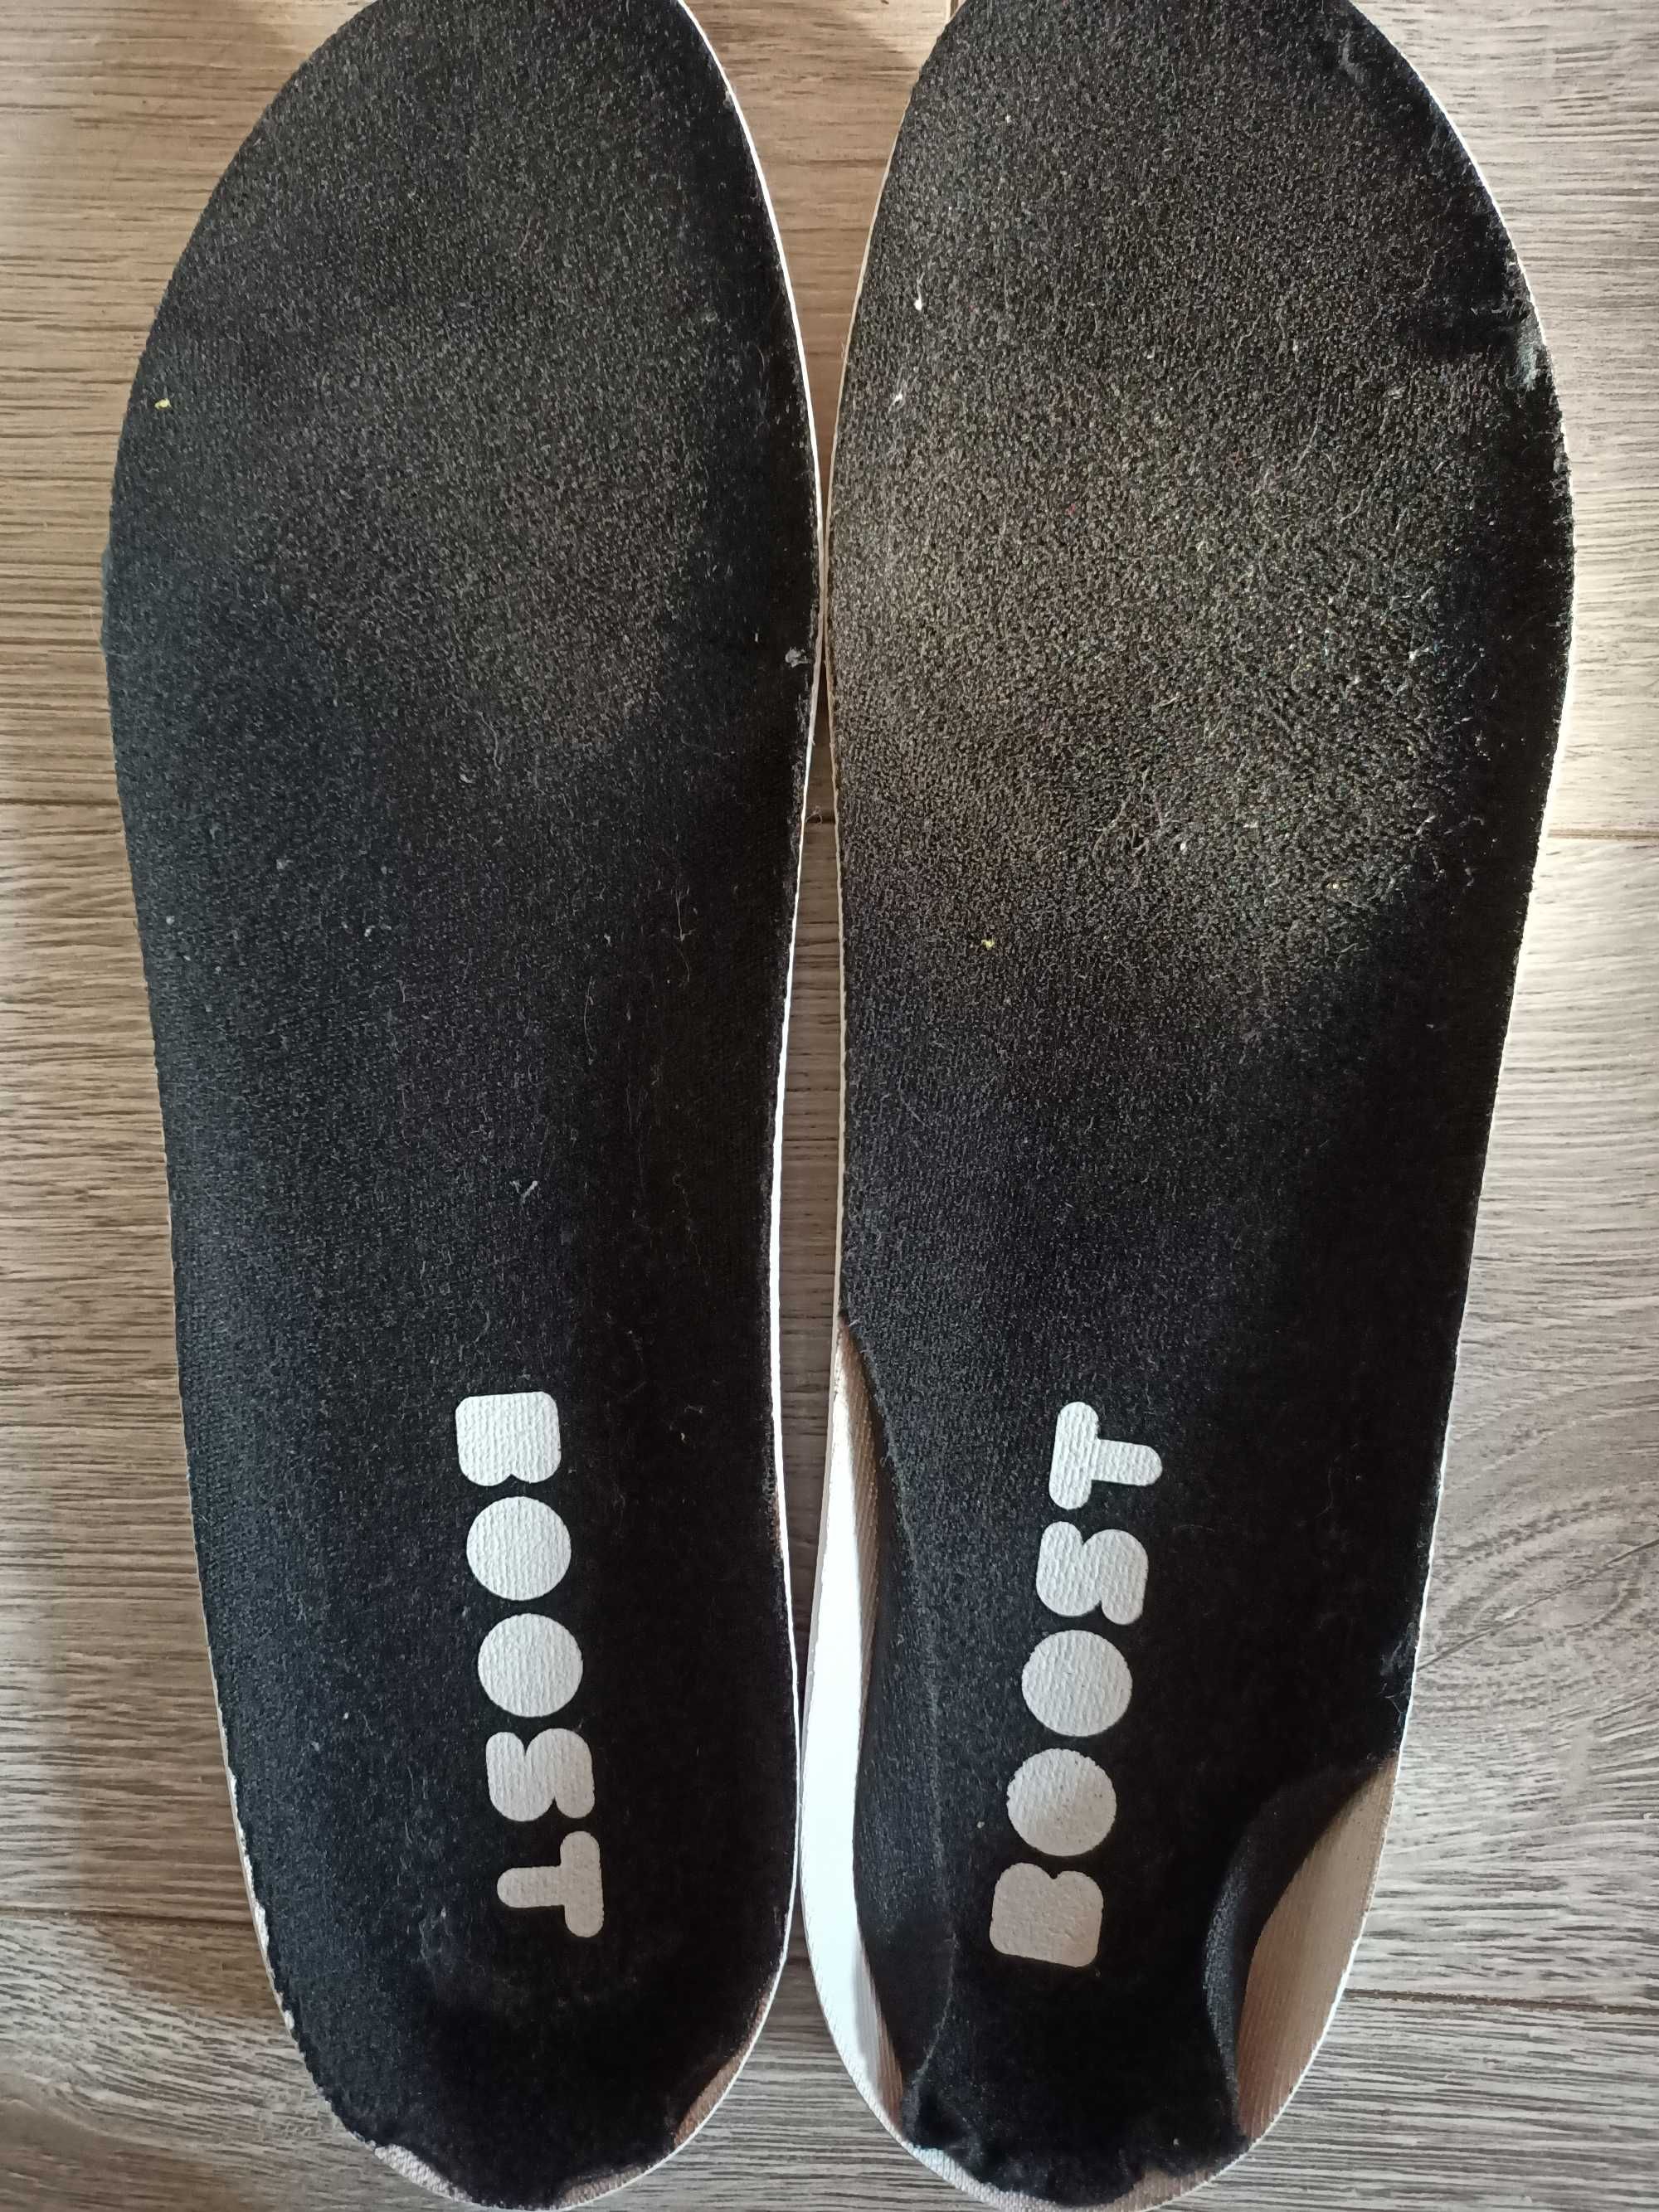 Adidas buty biegowe Astrarun 2.0 FY2300, rozm. 44 2/3